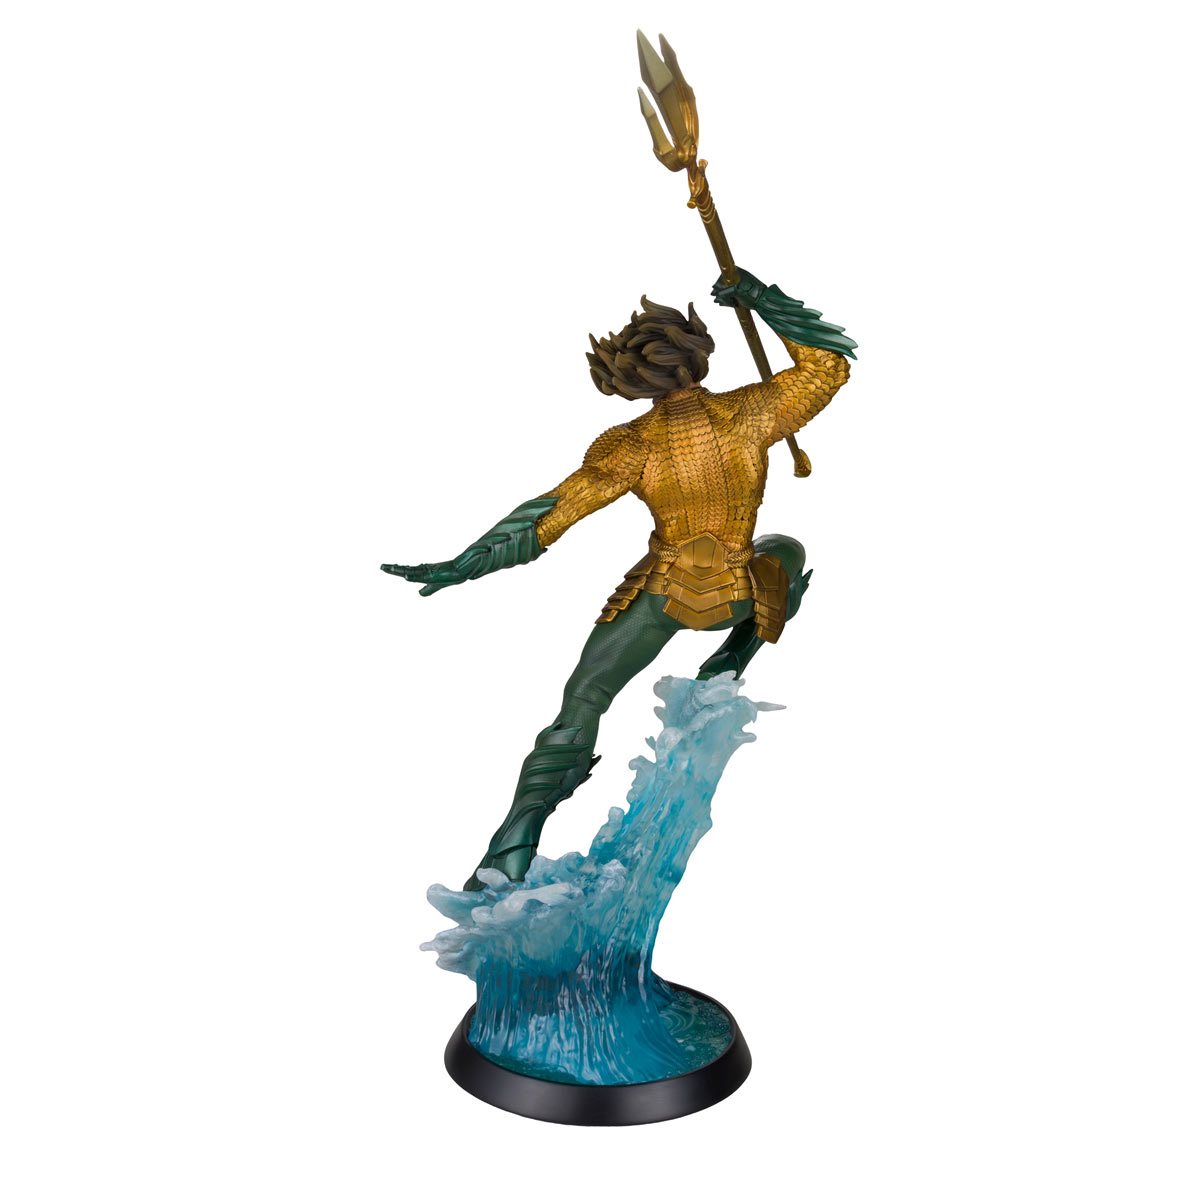 DC Shop: AQUAMAN AND THE LOST KINGDOM DC Multiverse Aquaman 12” Statue